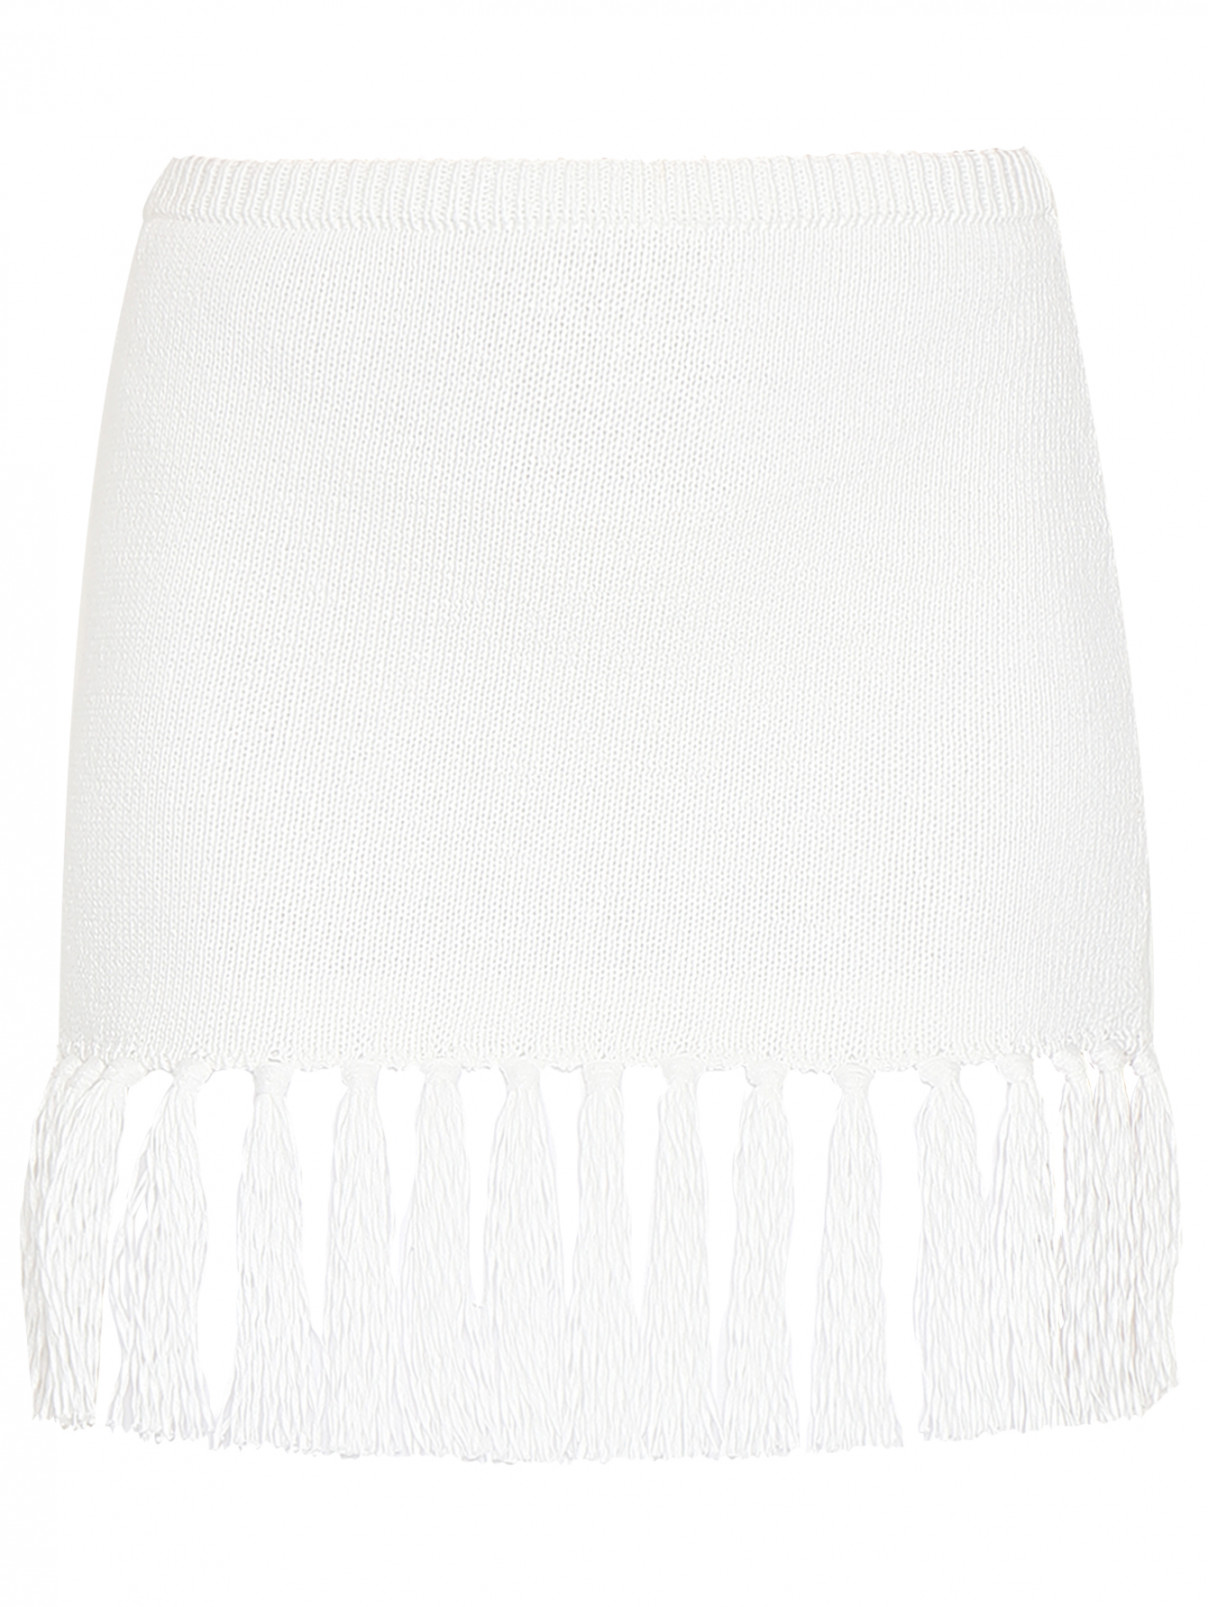 Трикотажная юбка-мини с бахромой Luisa Spagnoli  –  Общий вид  – Цвет:  Белый